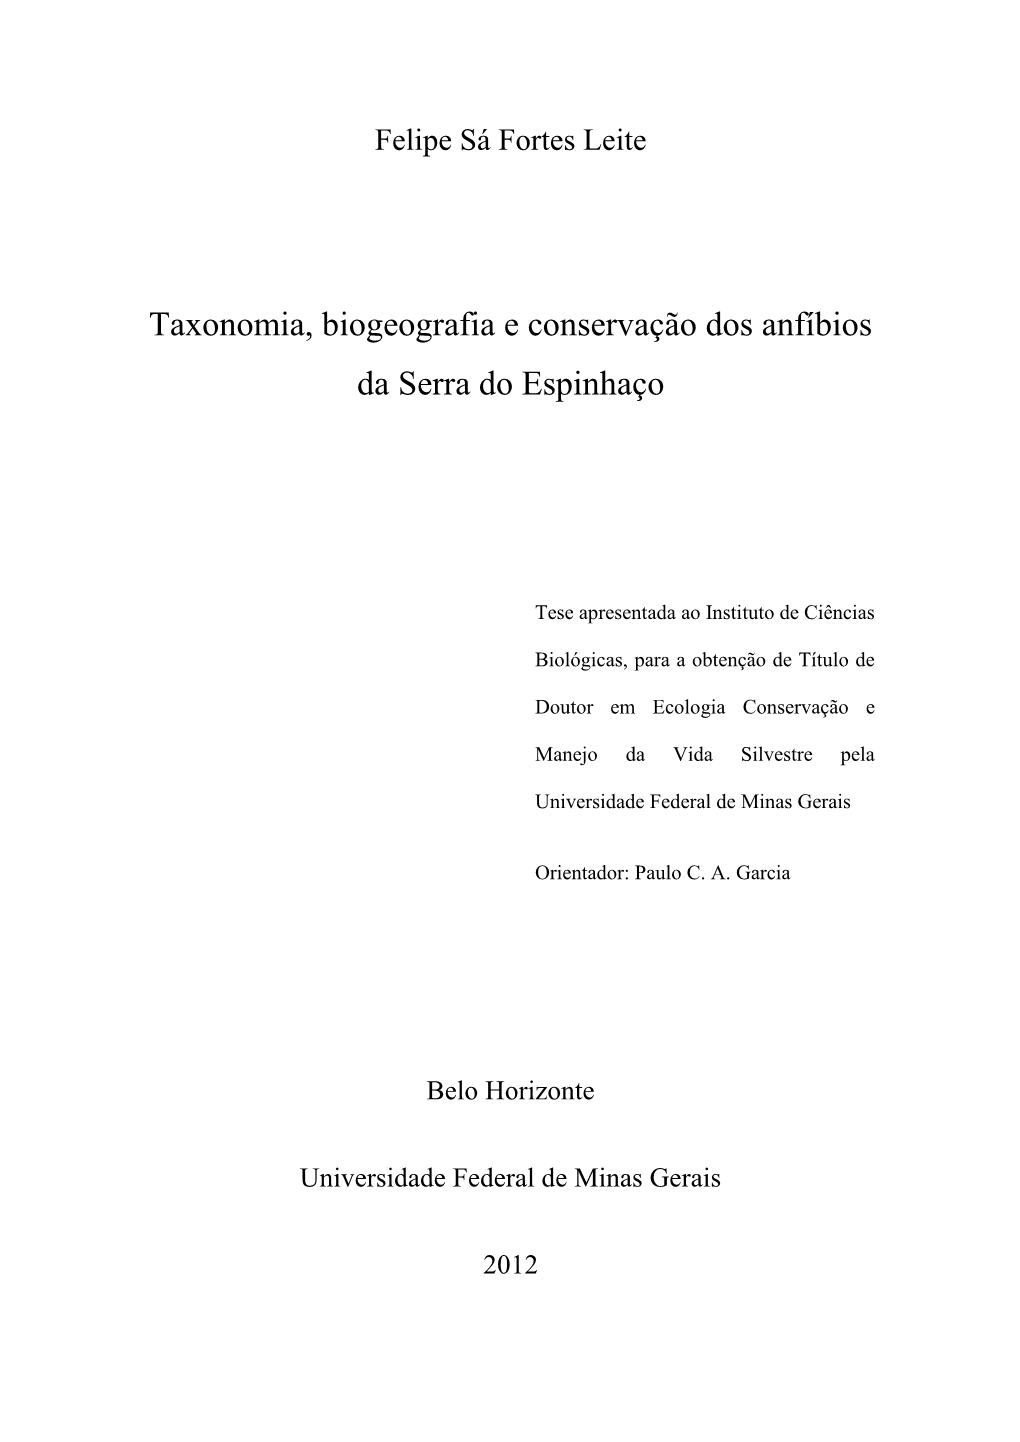 Taxonomia, Biogeografia E Conservação Dos Anfíbios Da Serra Do Espinhaço